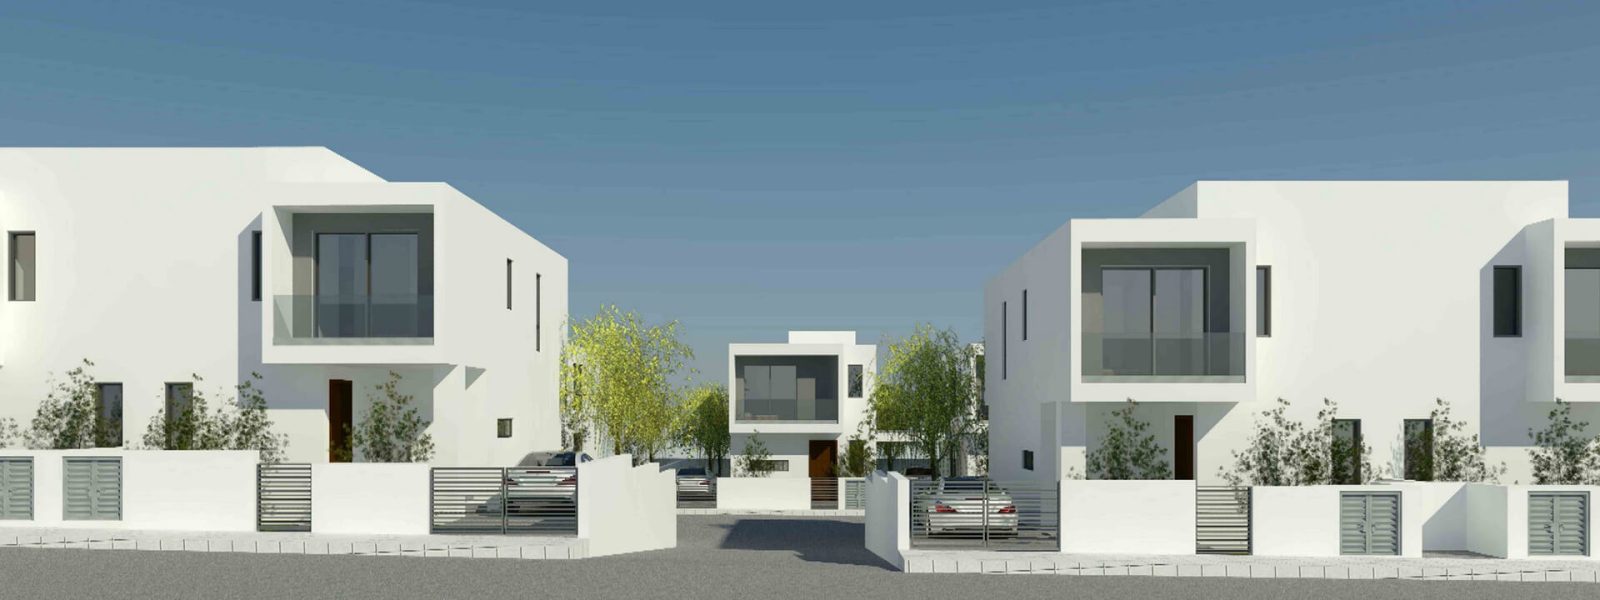 Bluebell residence kotedžas pietų Kipre